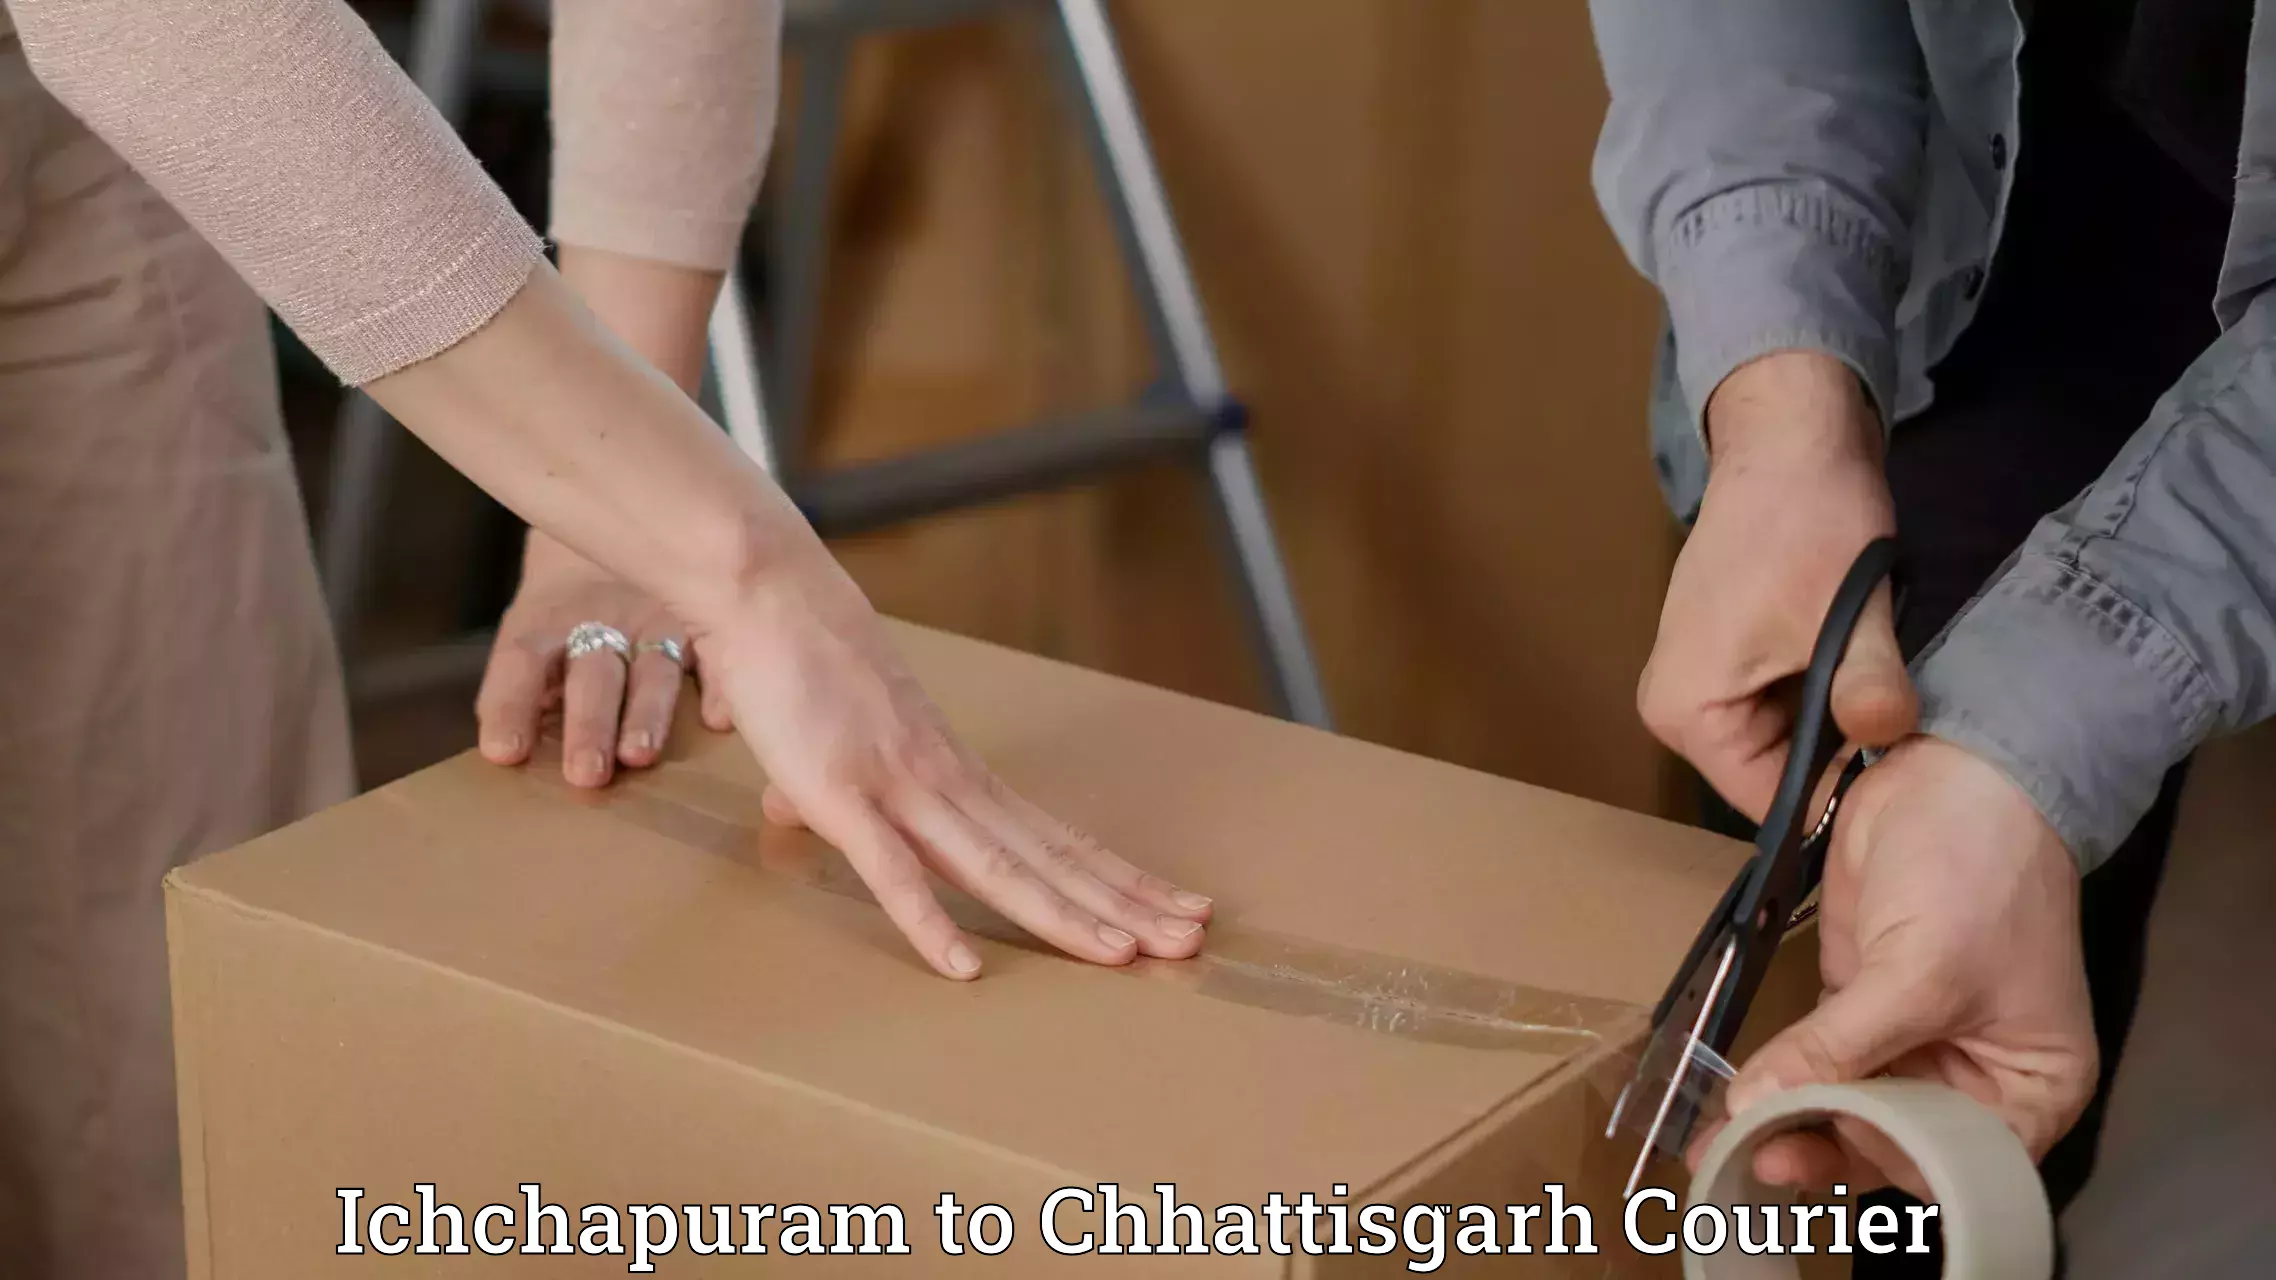 Subscription-based courier Ichchapuram to Kharora